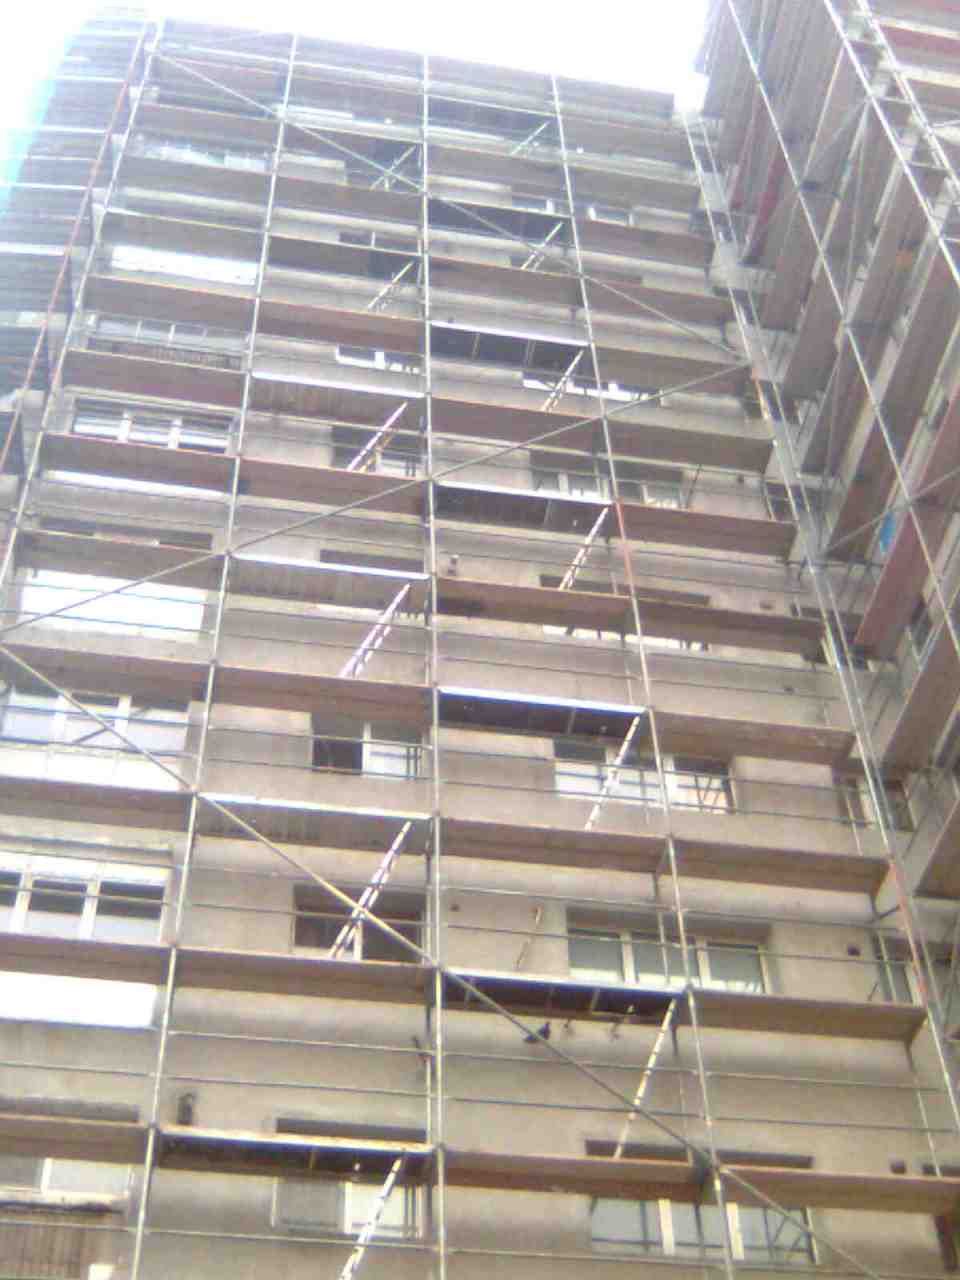 VIDEO Accident de muncă la Reșița – Muncitor căzut de pe scehele de la etajul 5